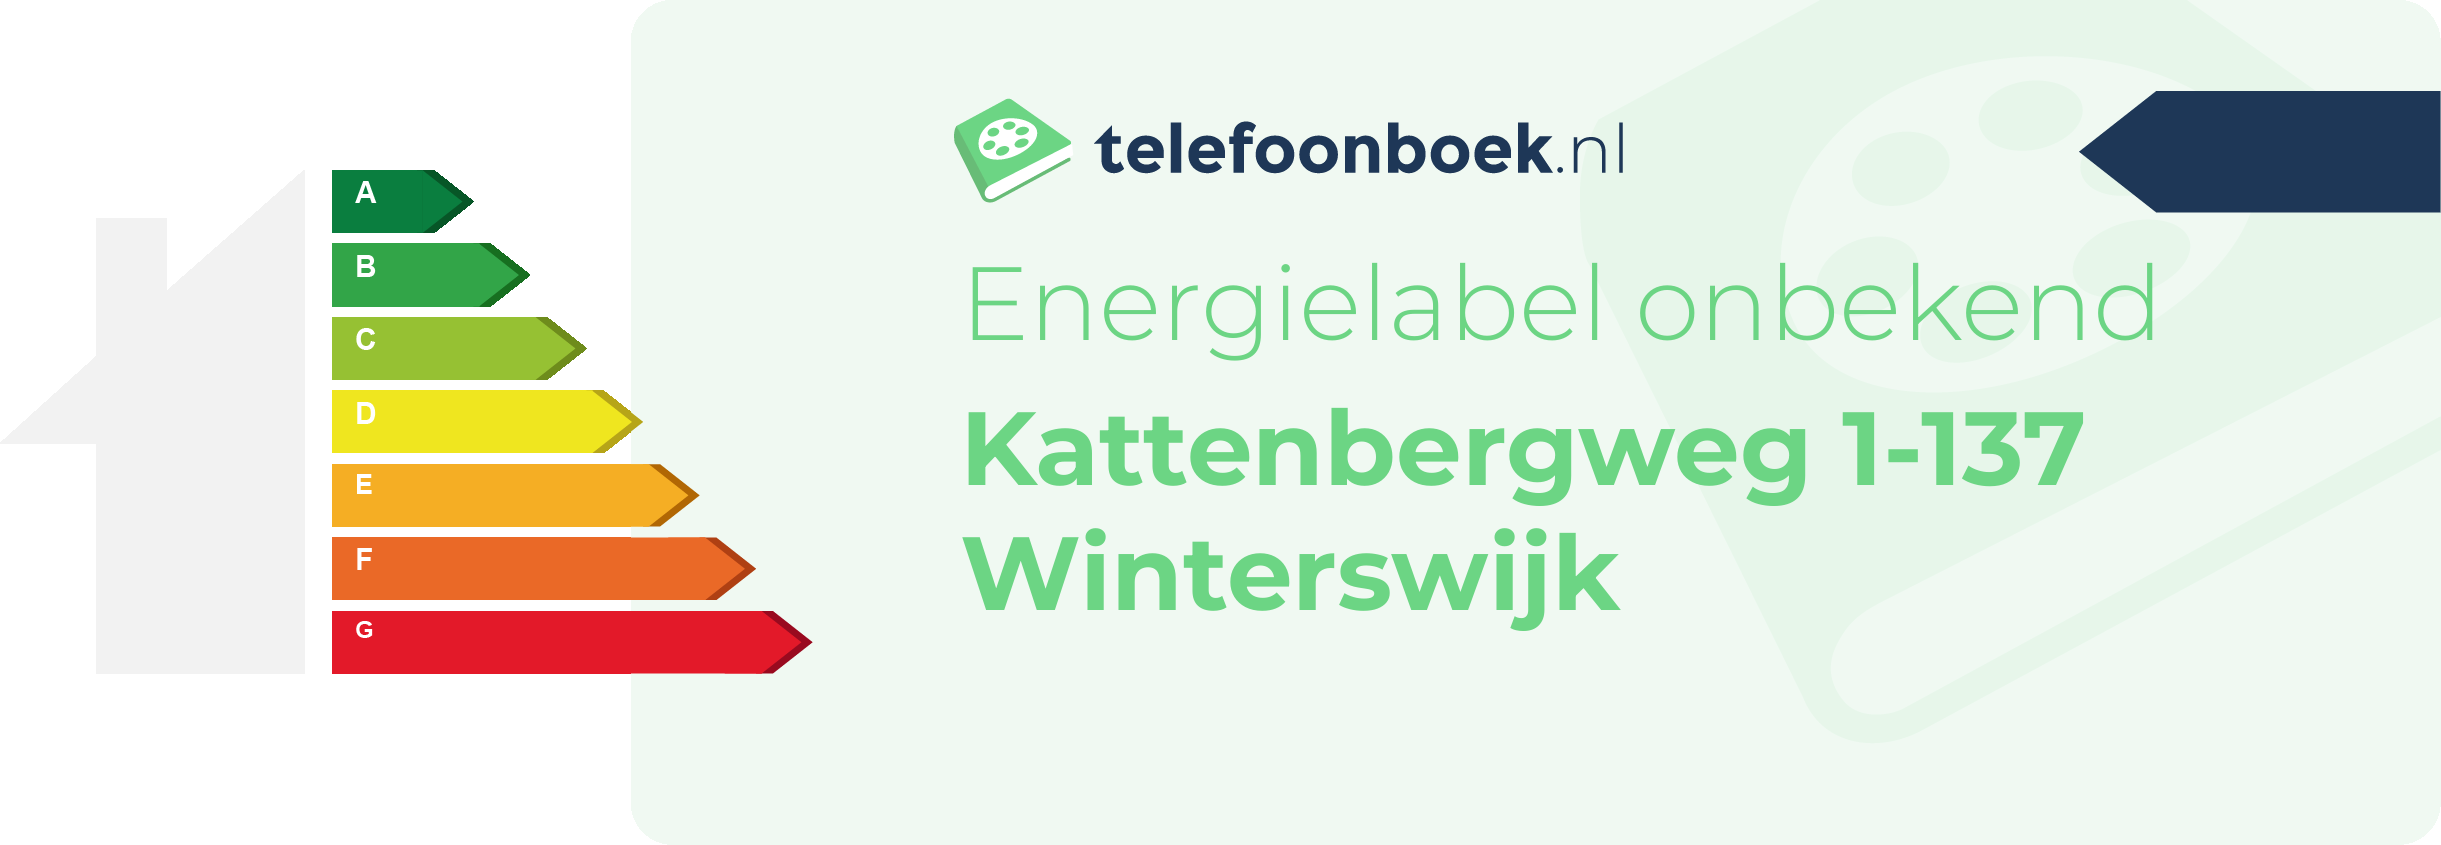 Energielabel Kattenbergweg 1-137 Winterswijk